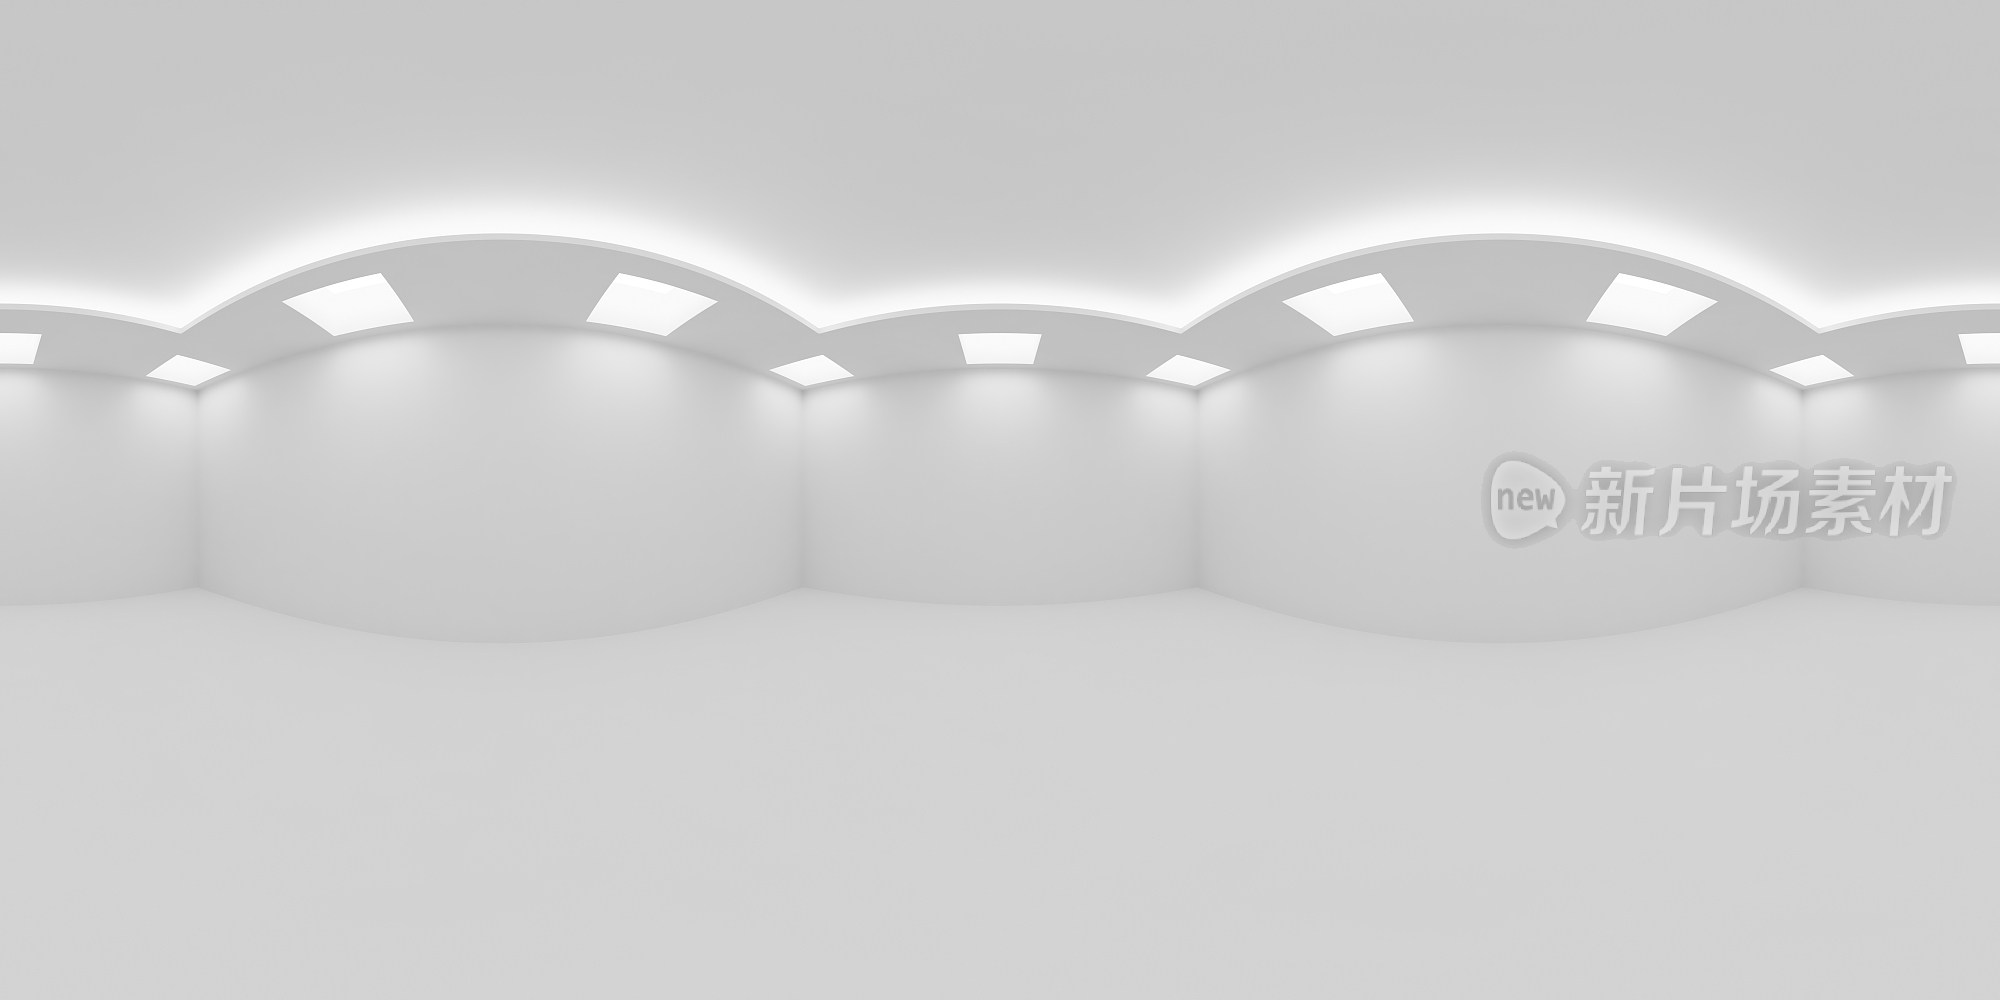 空的白色房间与方形嵌入式天花板灯HDRI地图